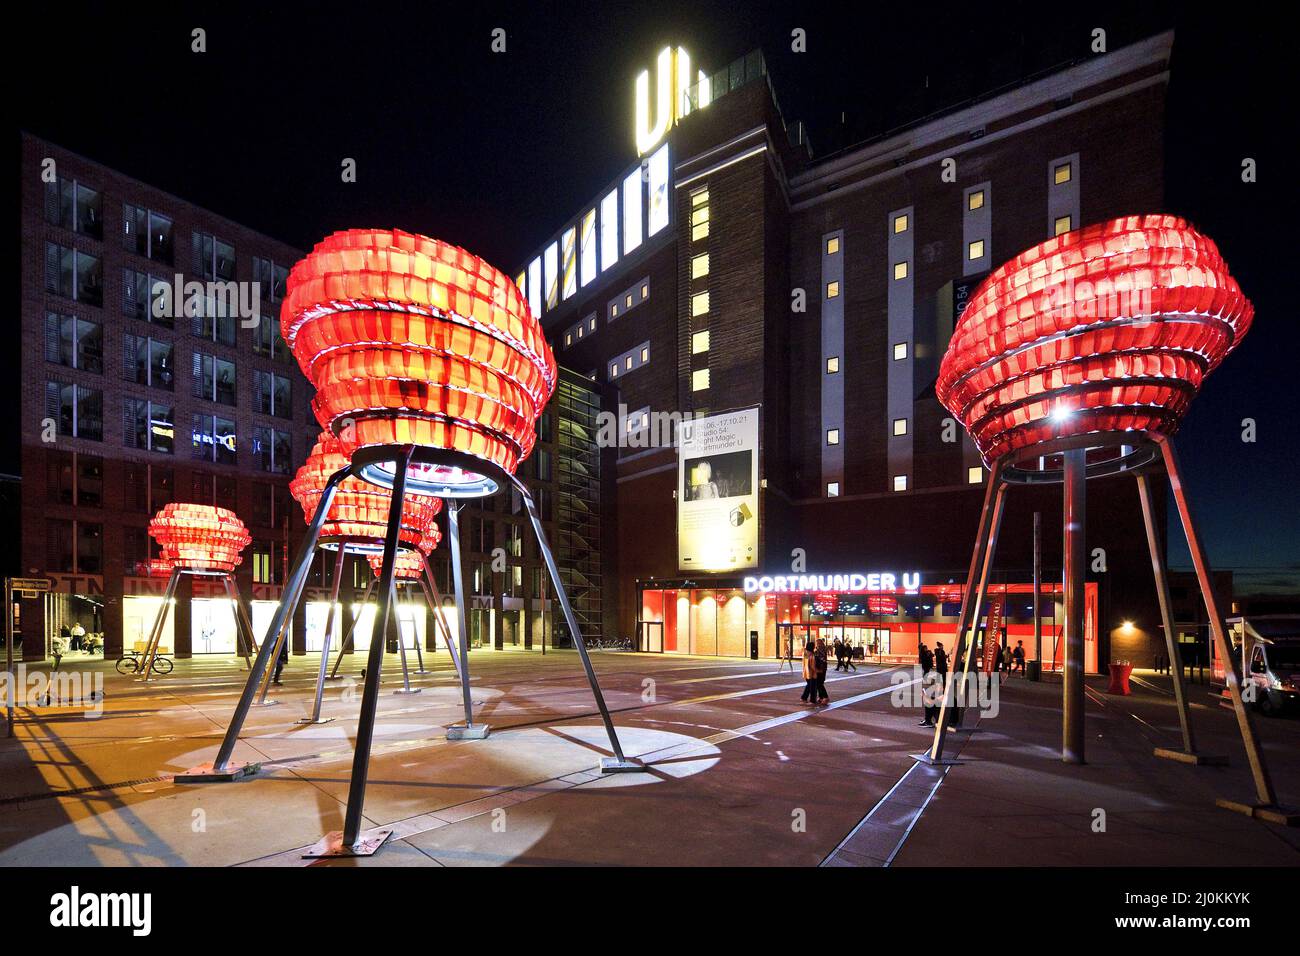 Dortmunder U, Centre pour l'Art et la créativité, Dortmund, région de Ruhr, Allemagne, Europe Banque D'Images